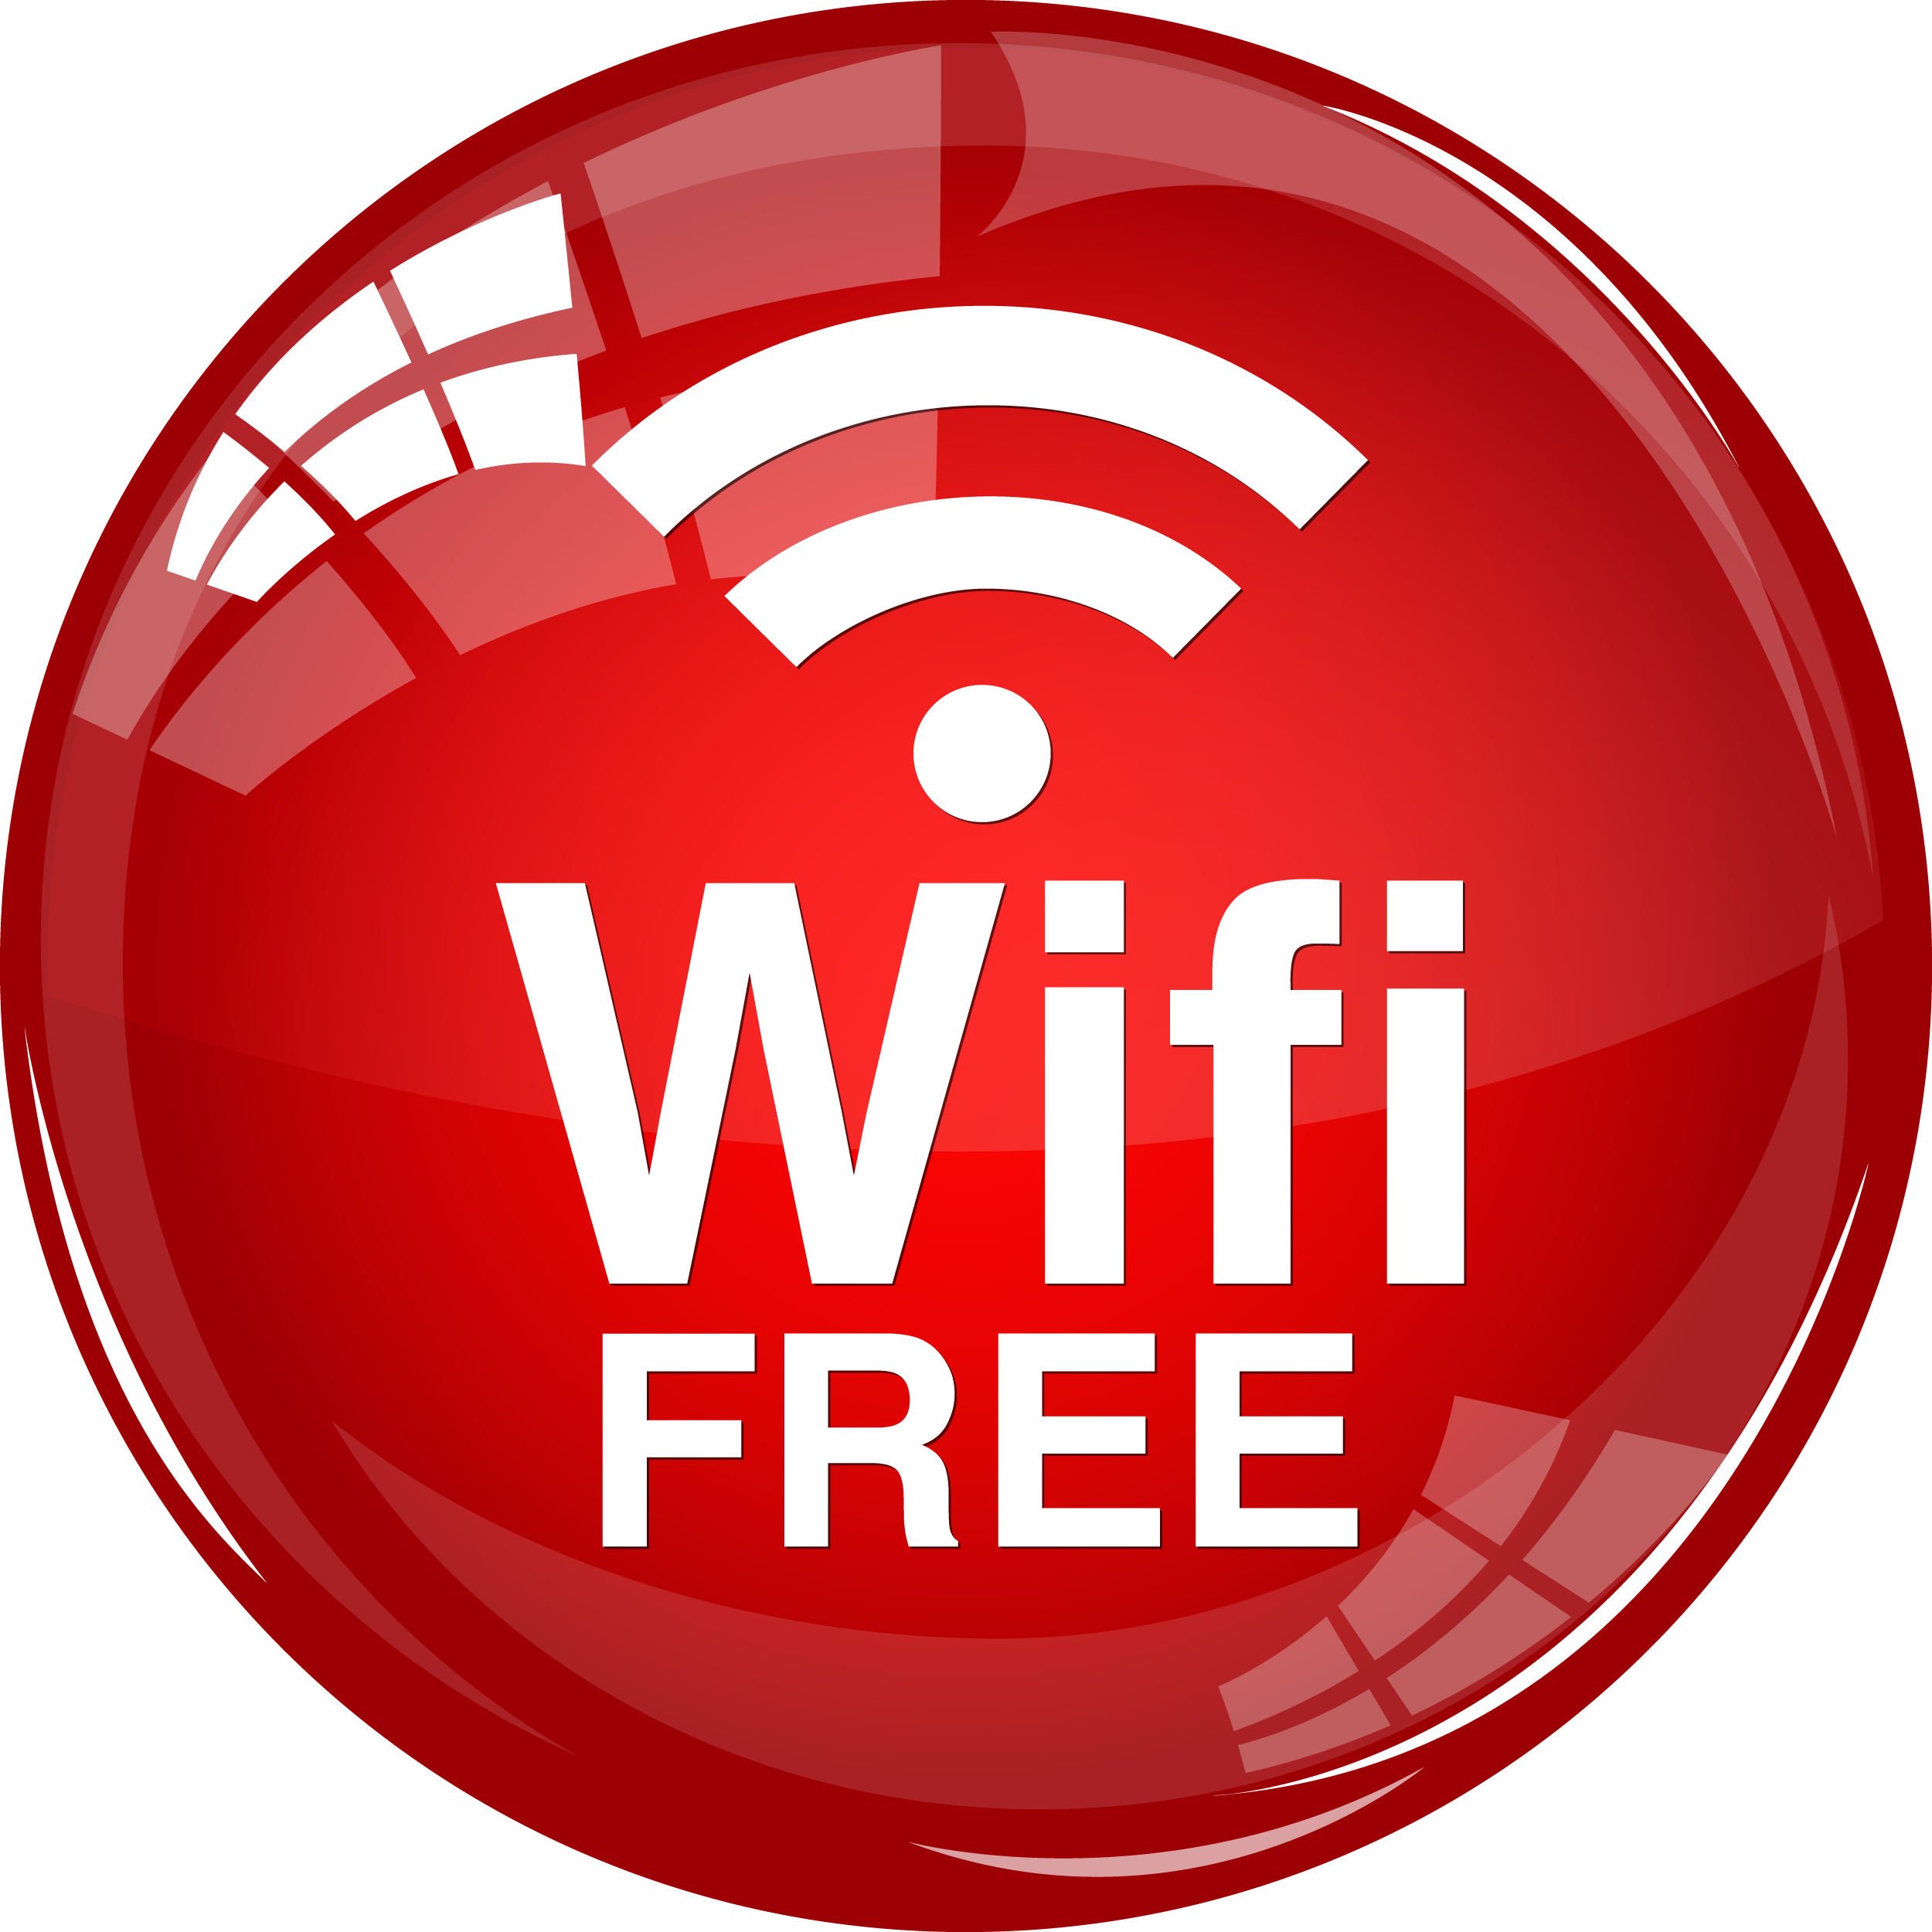 Wi fi. Вай фай. Wi-Fi логотип. Значок WIFI. WIFI free значок.